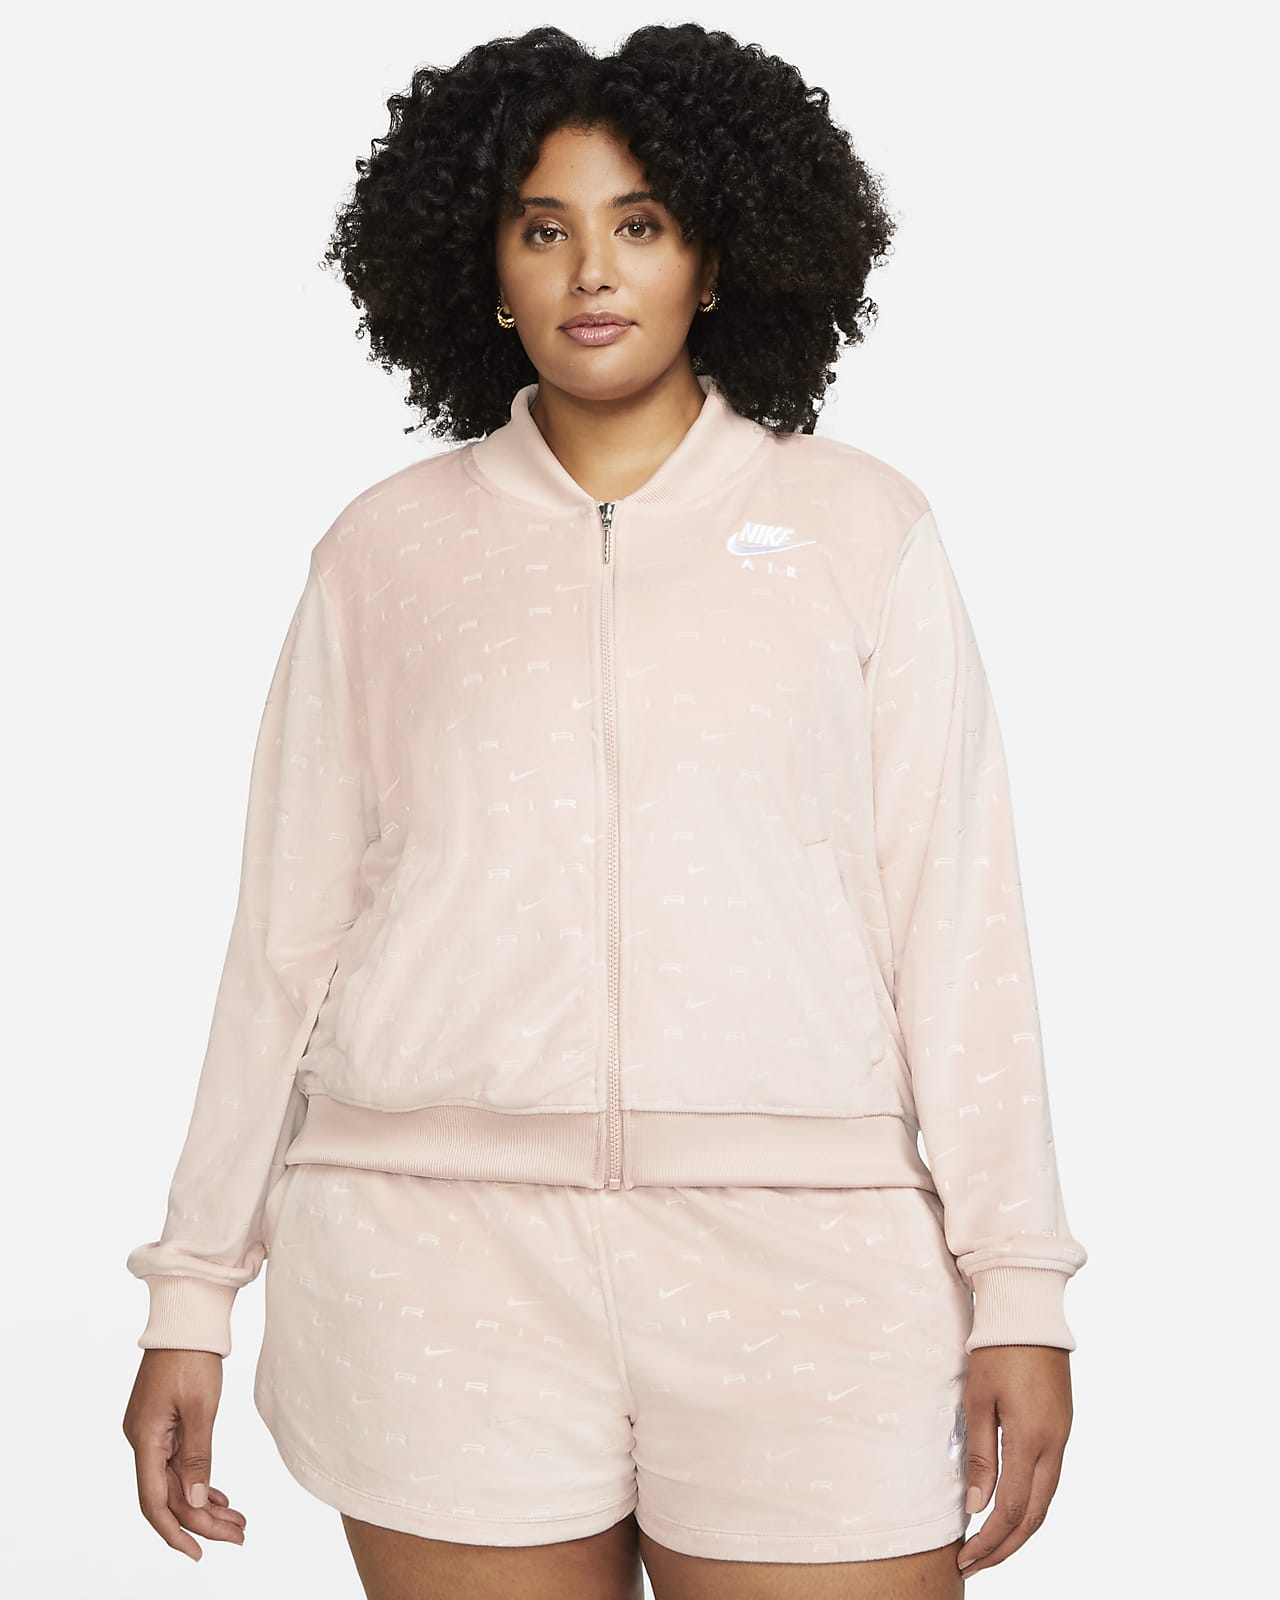 Nike Air Velour Women's Jacket (Plus Size)